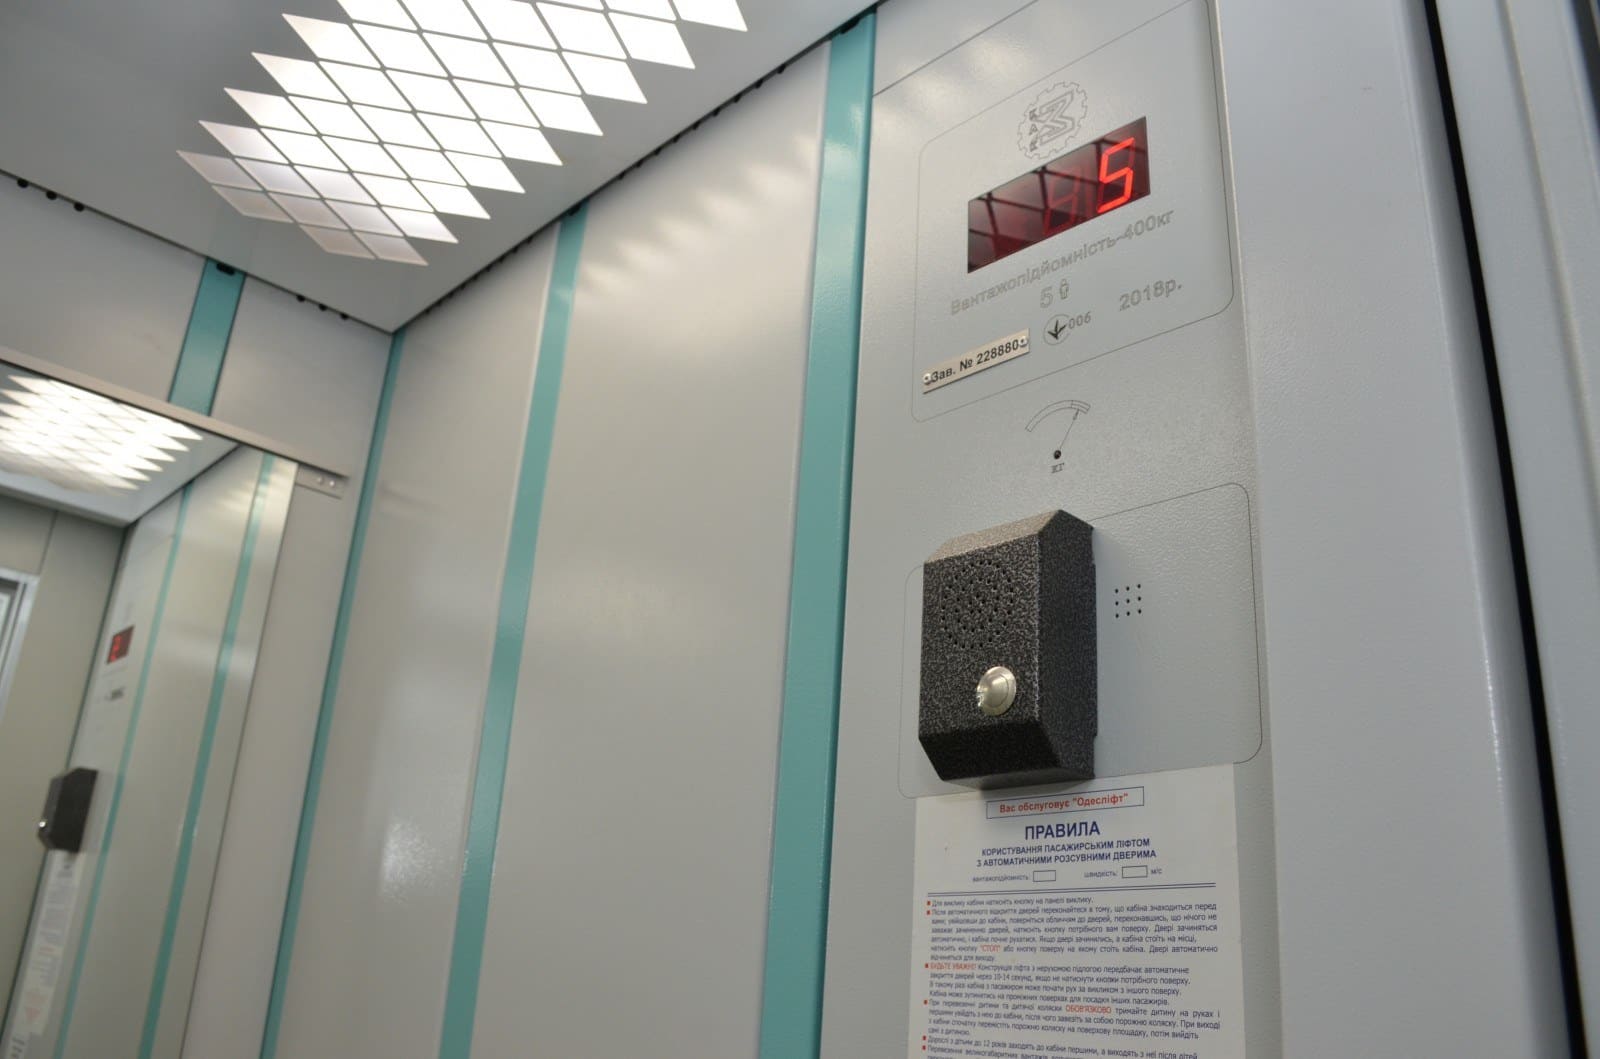 Телефон лифтовой службы. Панель лифта Сиблифт. Лифт Сиблифт кабина. Модернизированный лифт ЩЛЗ. Блок вызова диспетчера лифта.